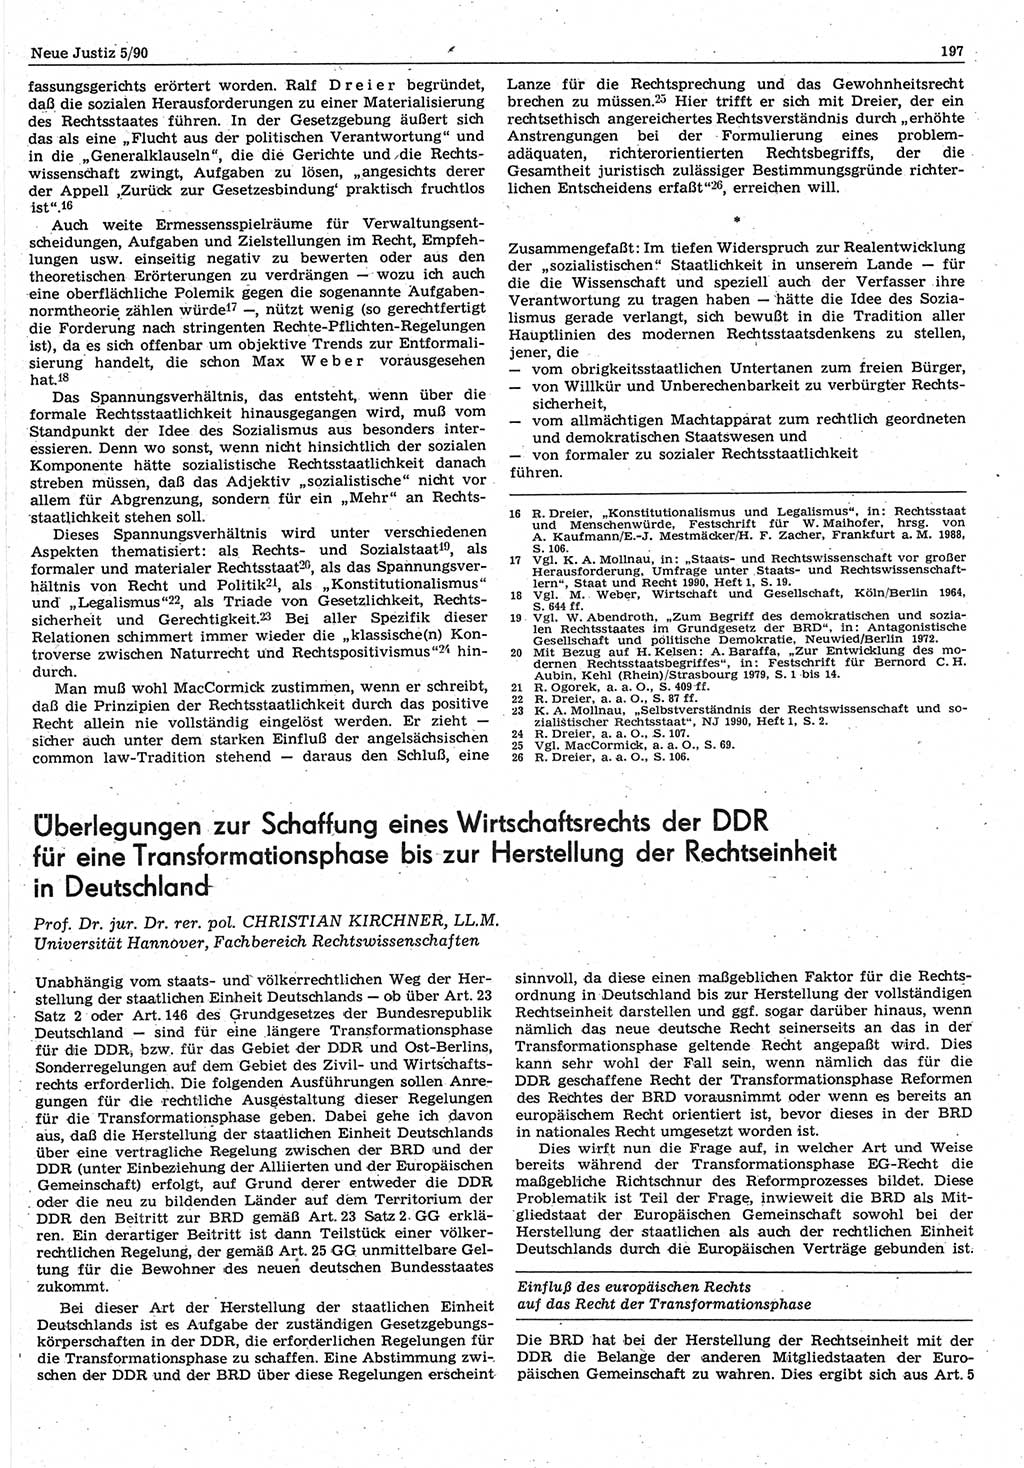 Neue Justiz (NJ), Zeitschrift für Rechtsetzung und Rechtsanwendung [Deutsche Demokratische Republik (DDR)], 44. Jahrgang 1990, Seite 197 (NJ DDR 1990, S. 197)